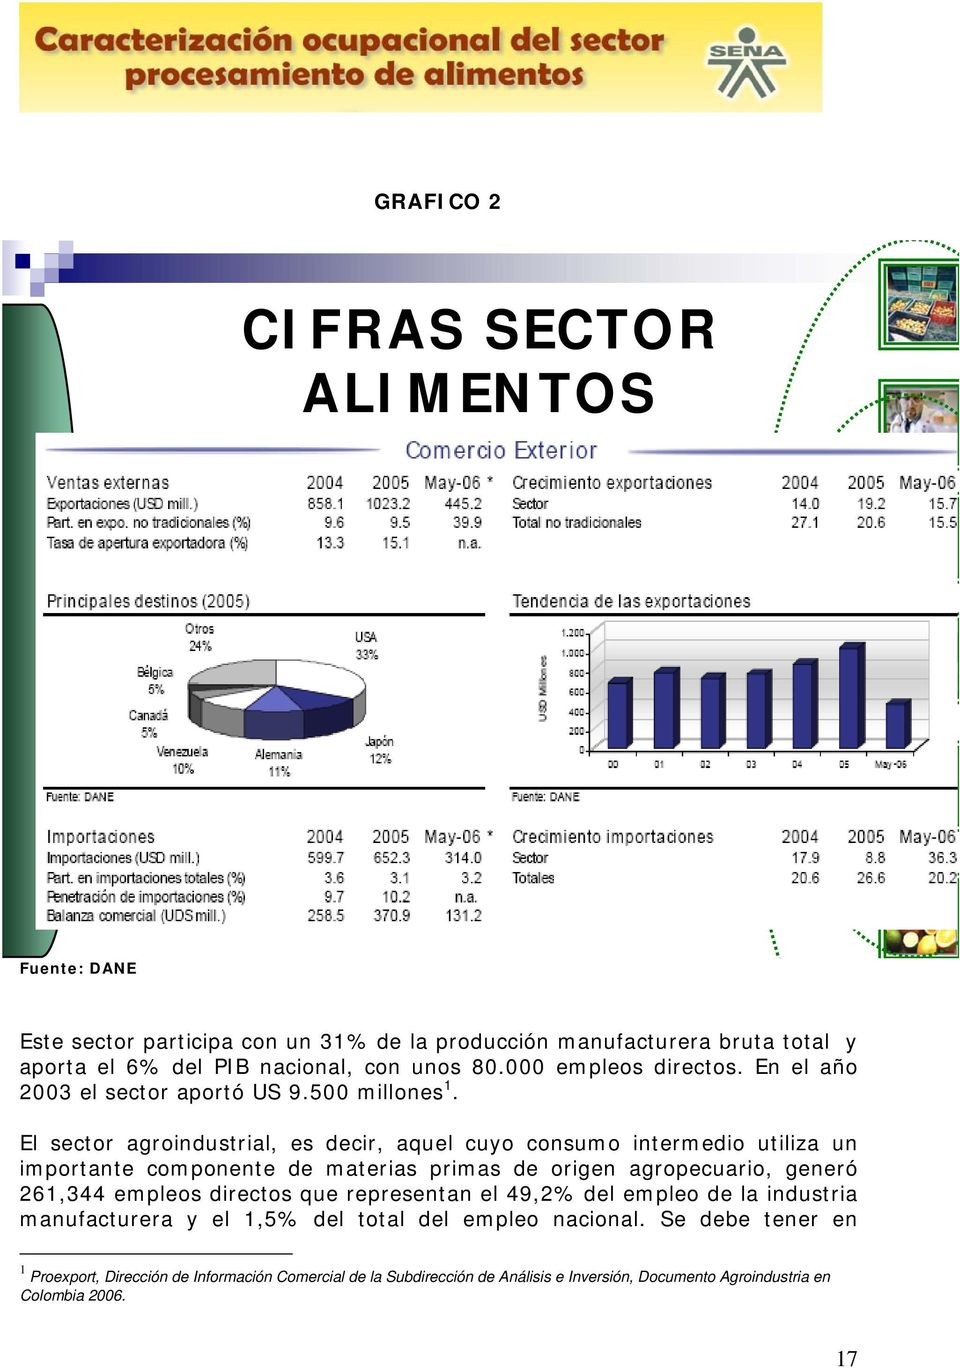 El sector agroindustrial, es decir, aquel cuyo consumo intermedio utiliza un importante componente de materias primas de origen agropecuario, generó 261,344 empleos